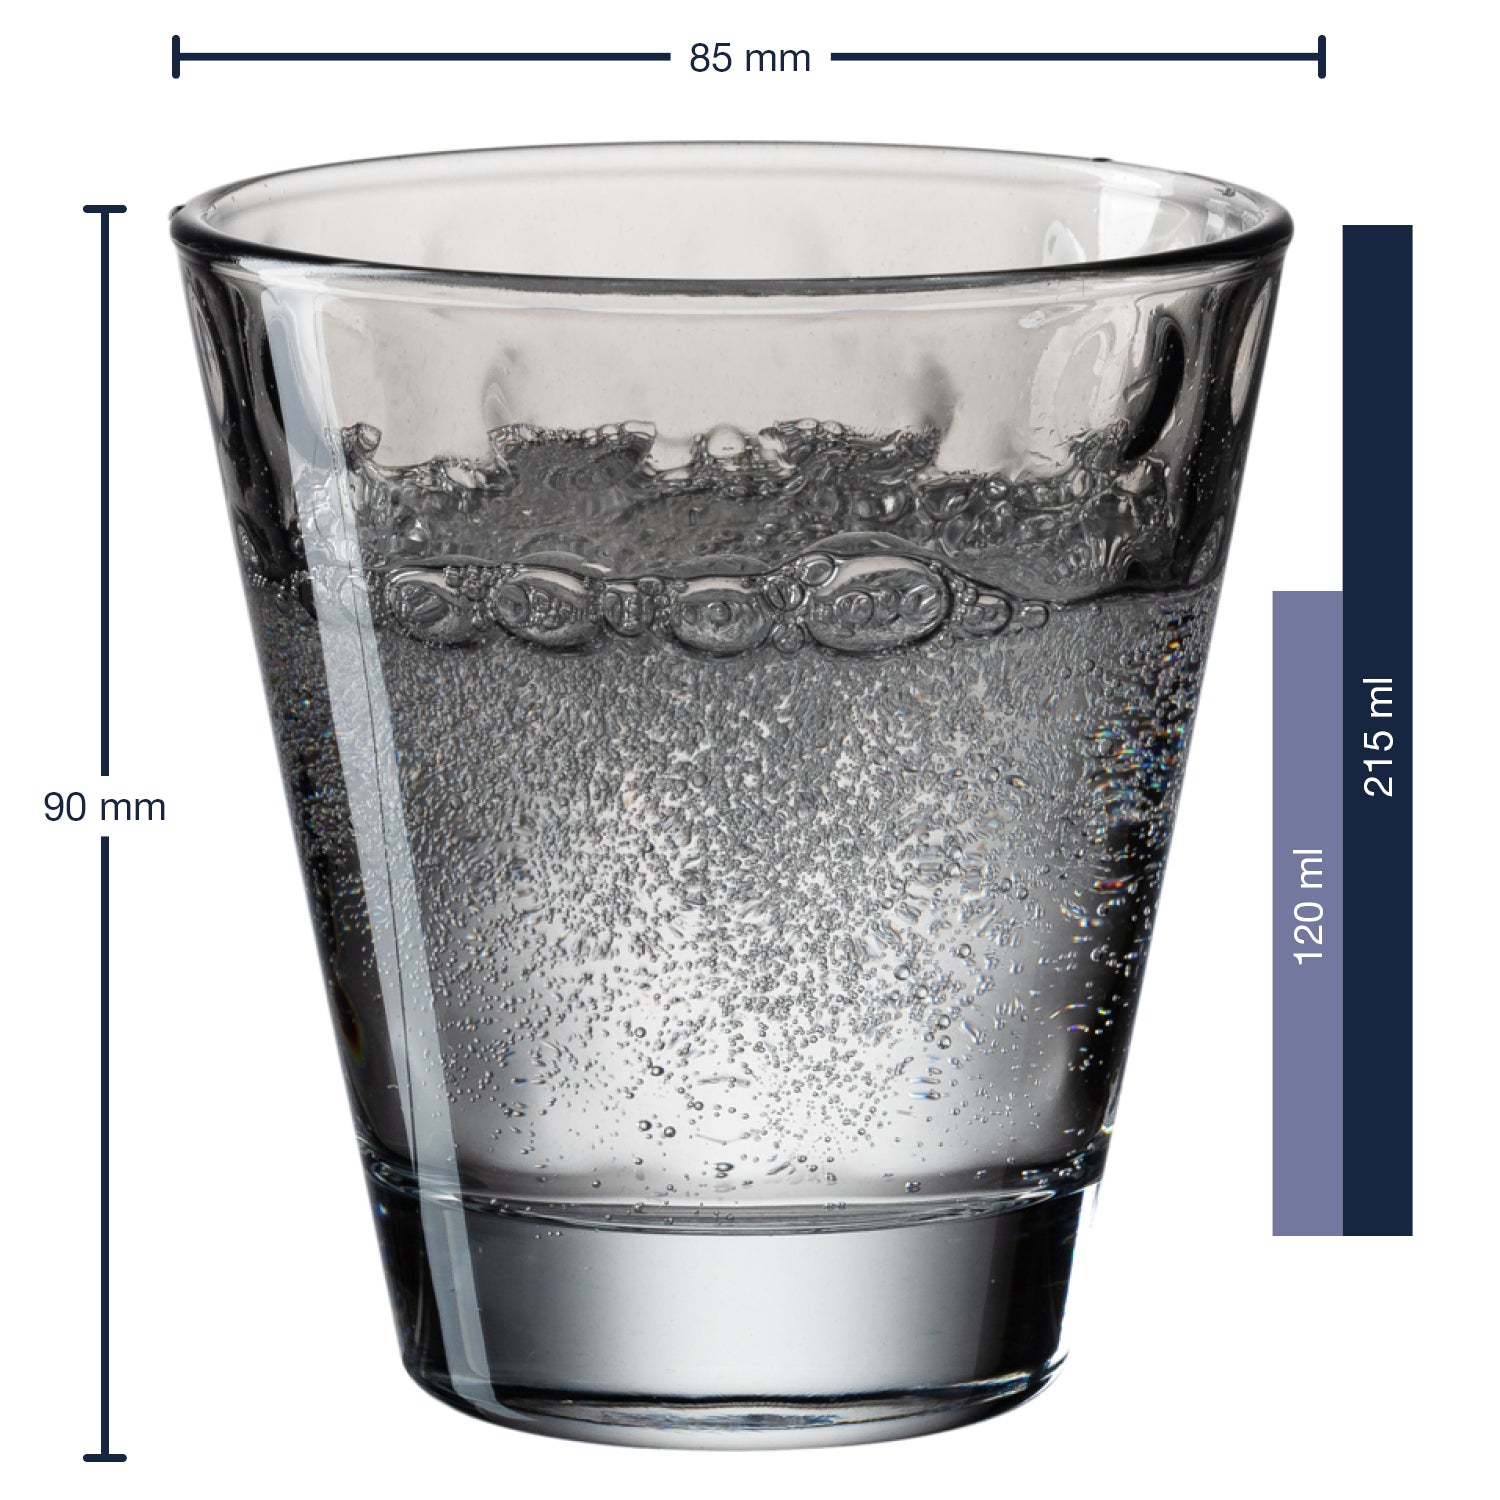 Trinkglas OPTIC 6er-Set 215 ml grau